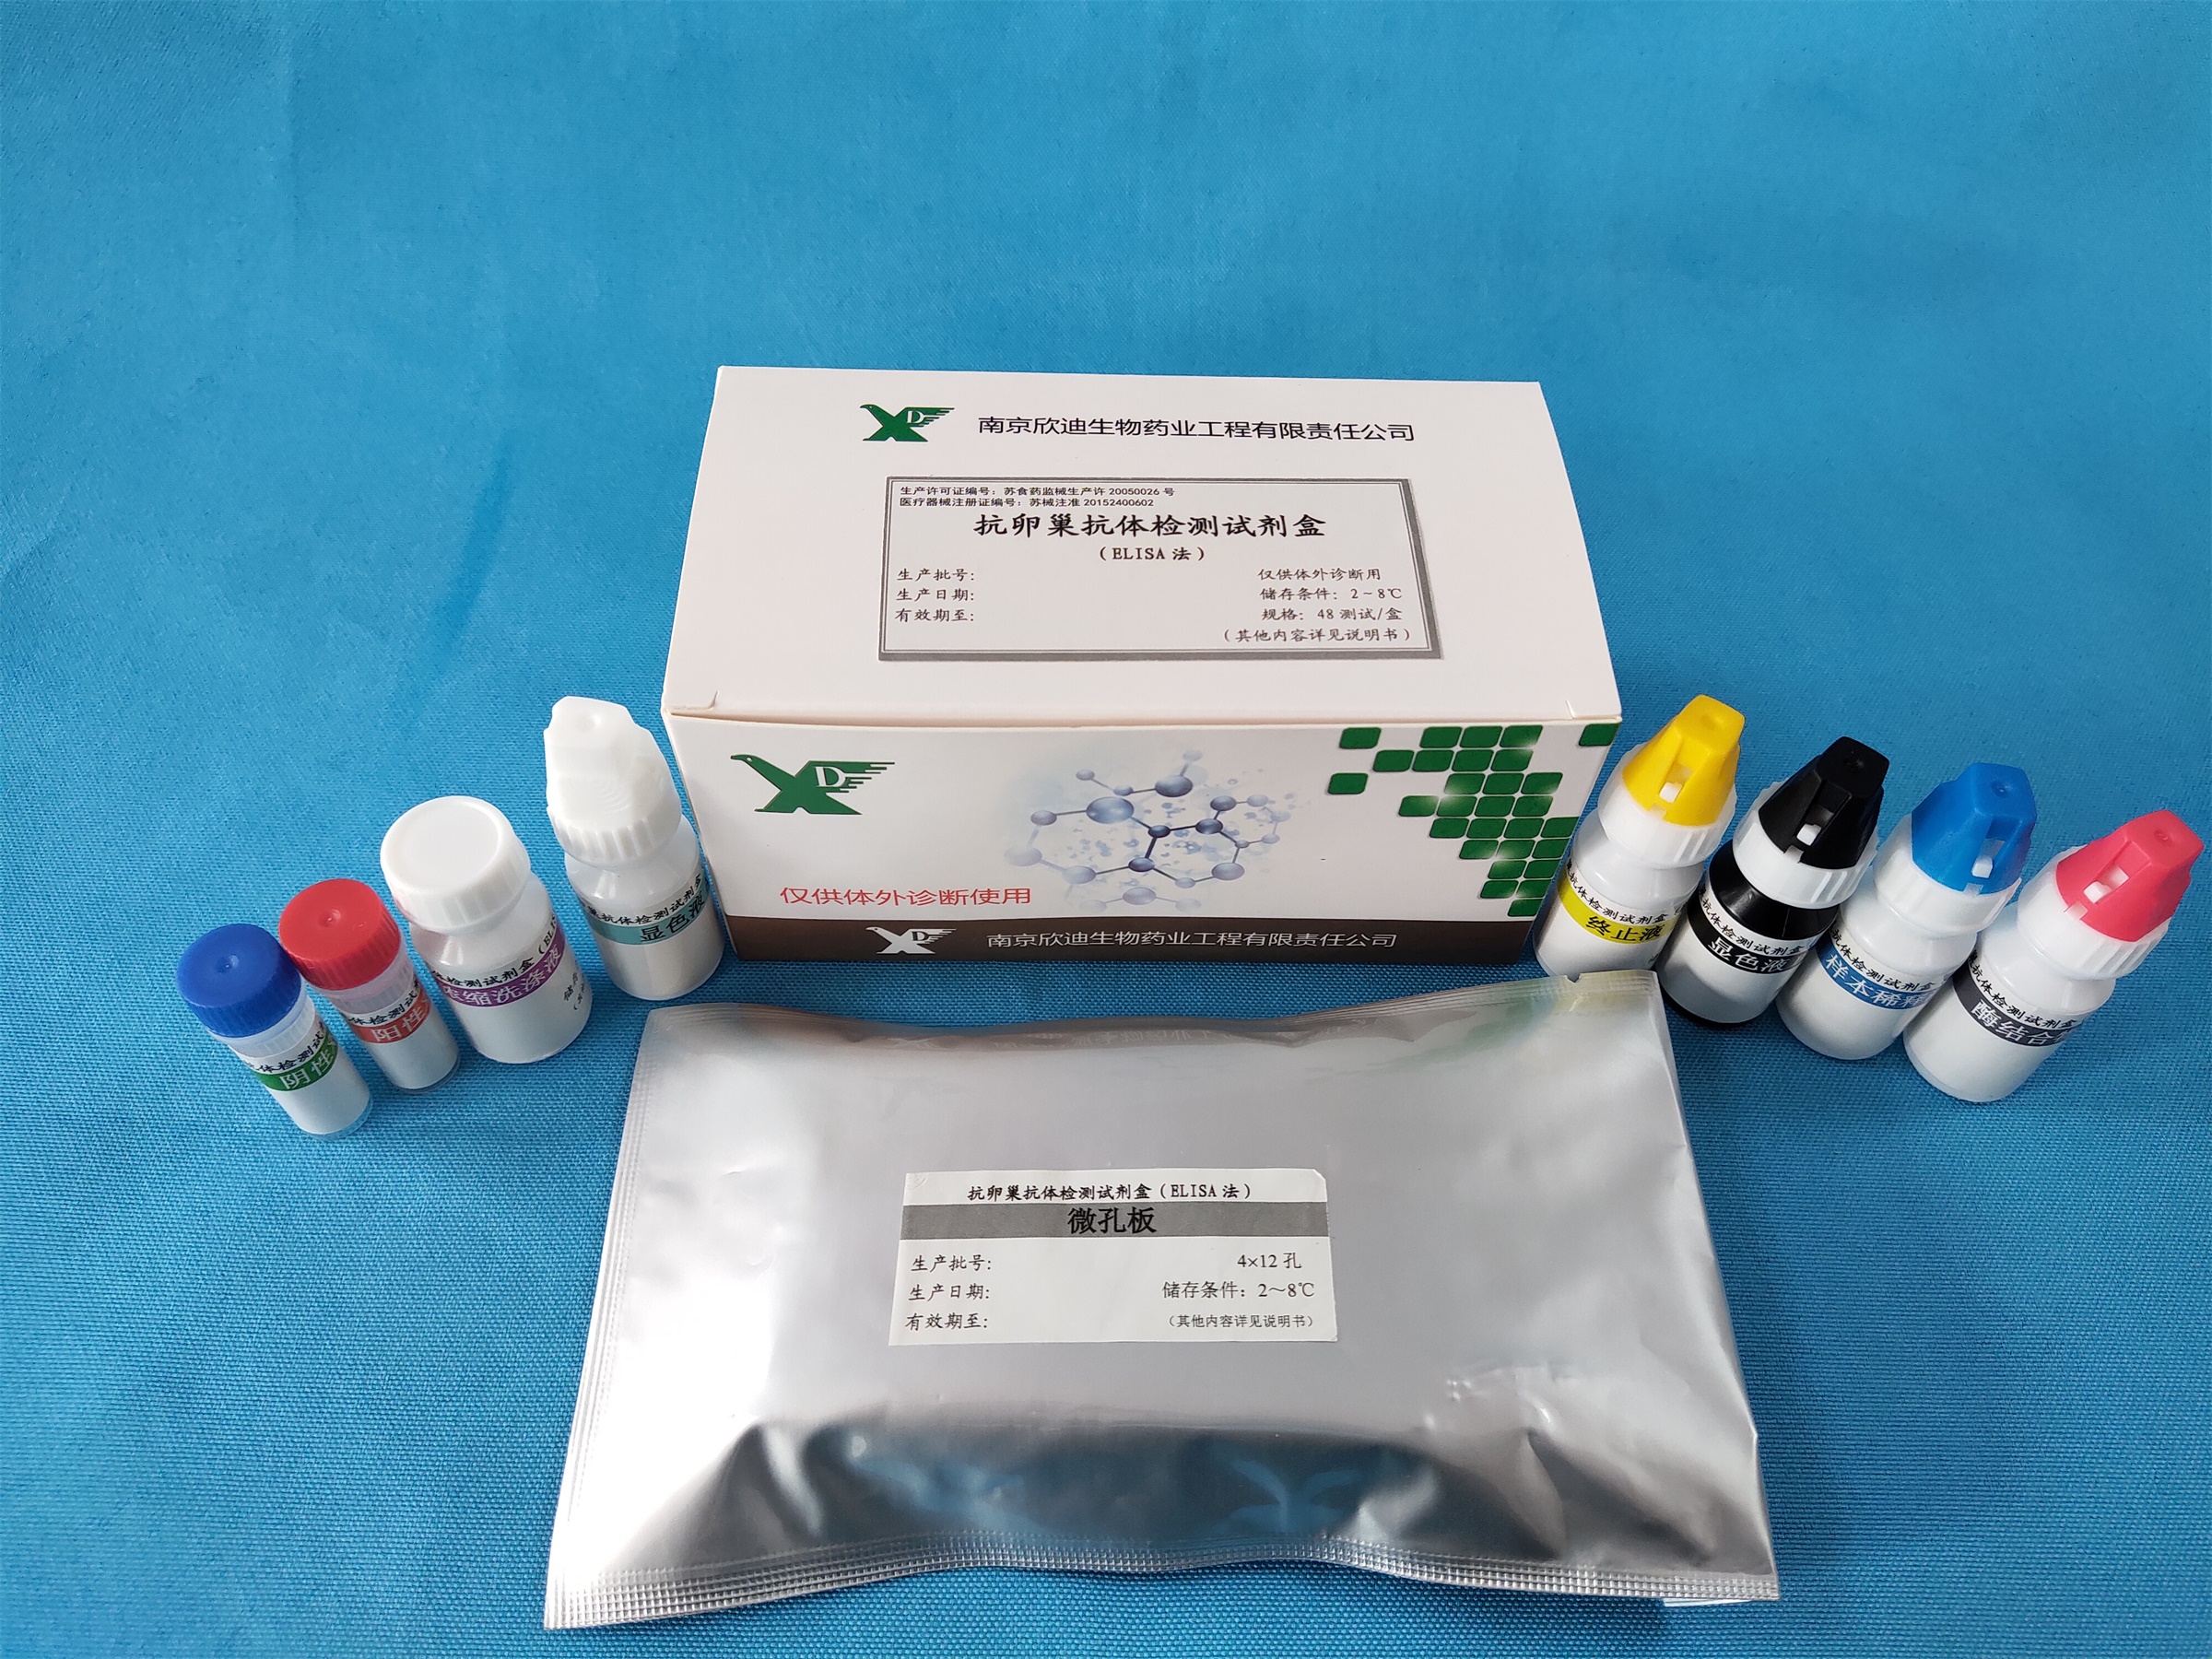 【欣迪】抗卵巢抗体检测试剂盒(ELISA法)